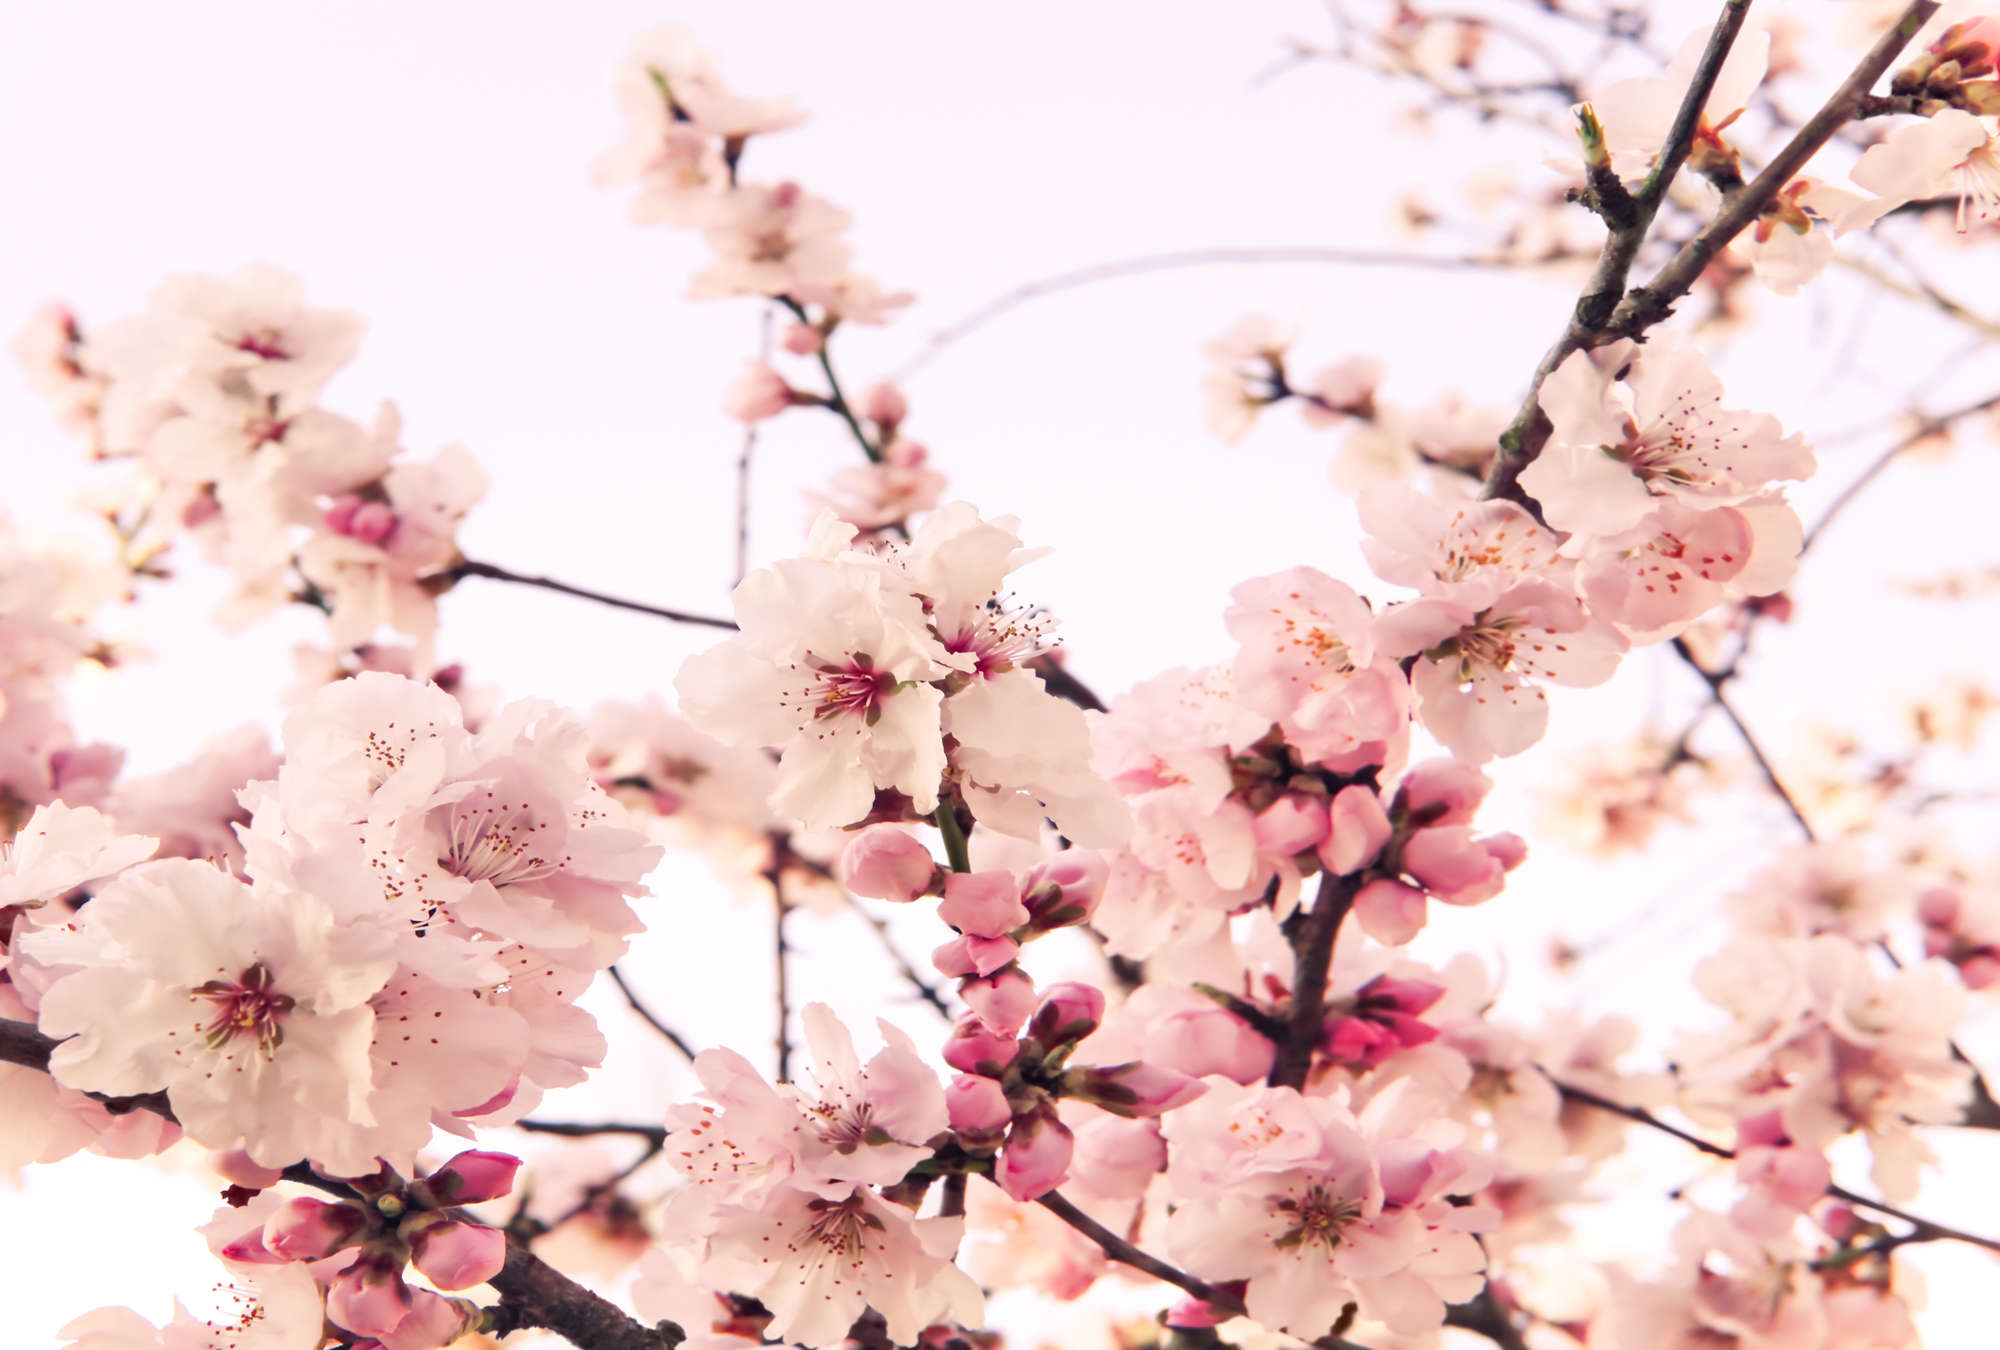             Carta da parati fotografica di piante con fiori di ciliegio in fiore su vello liscio opaco
        